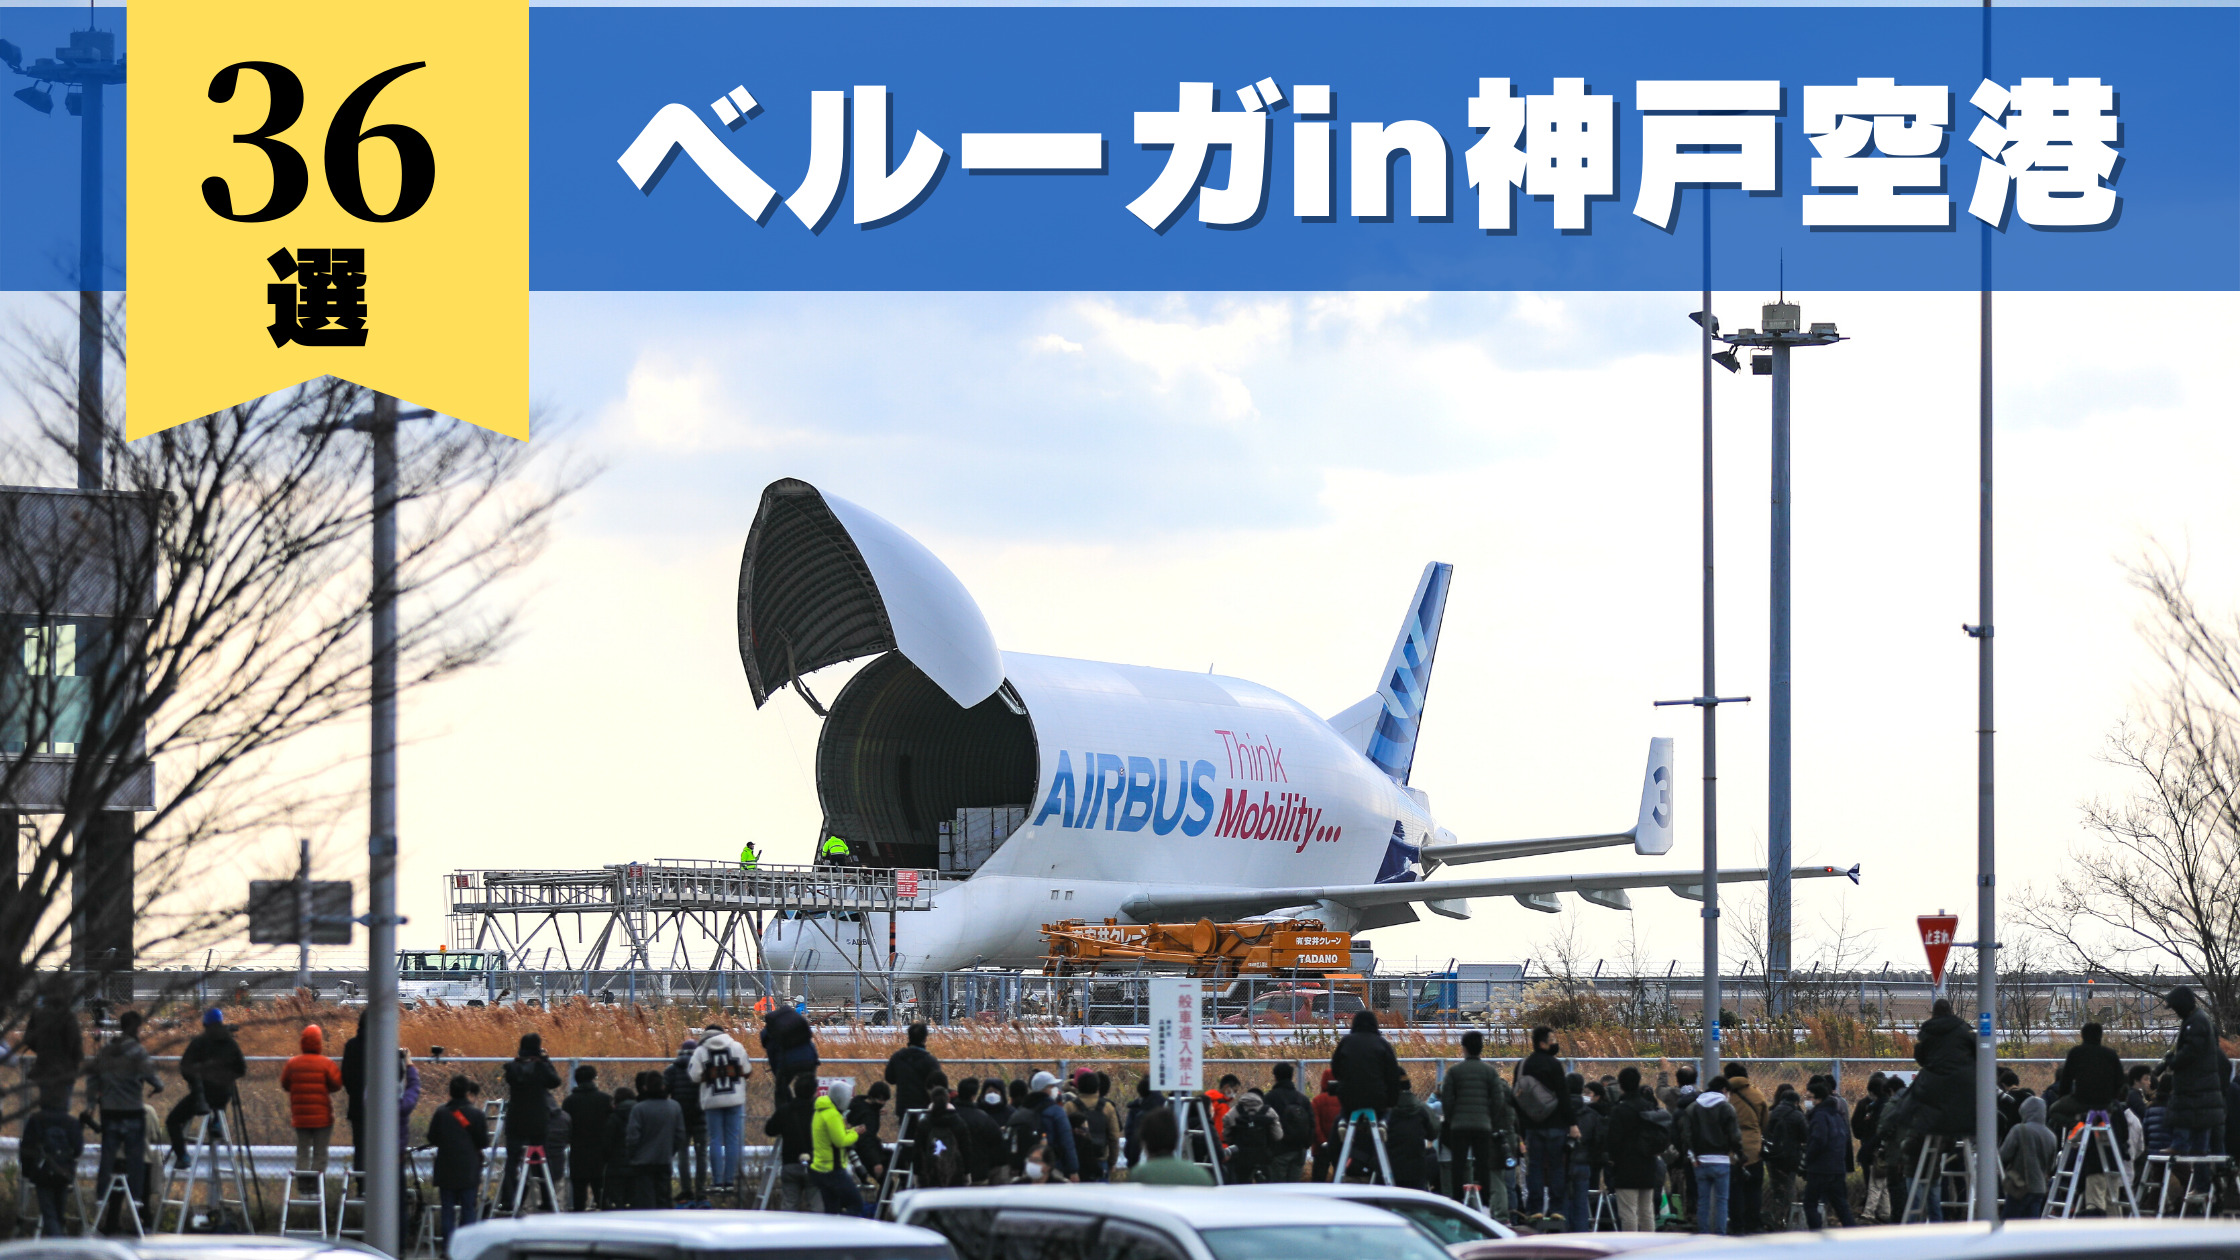 Airbus A300 600st Beluga 神戸空港に飛来 エアバスベルーガ写真36選 シテイリョウコウ